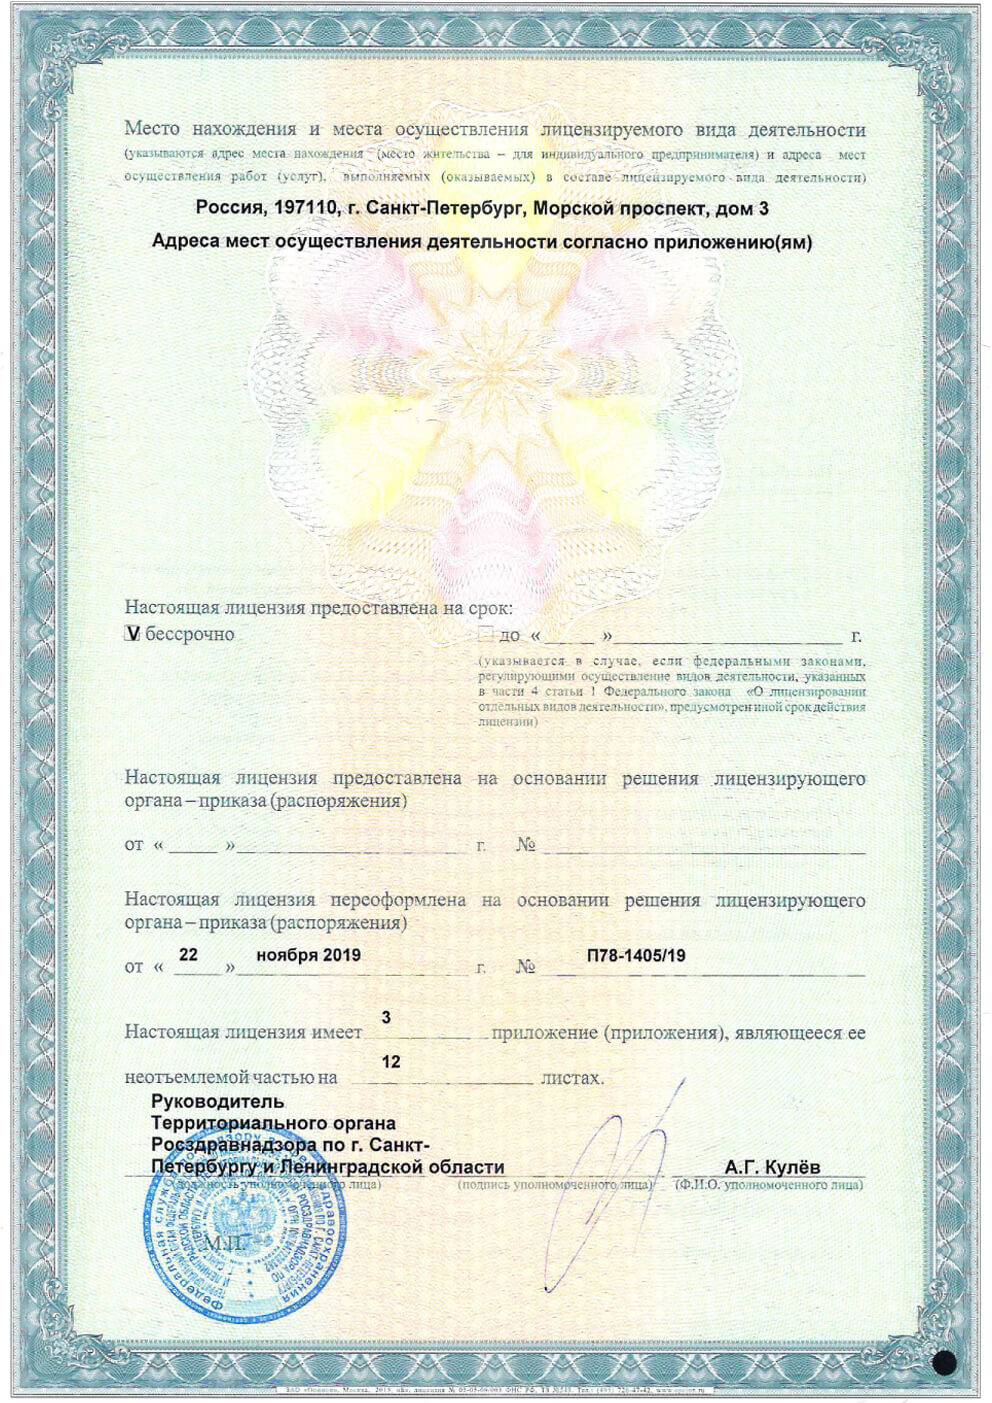 ФГБУ «Консультативно-диагностический центр с поликлиникой» лицензия №2